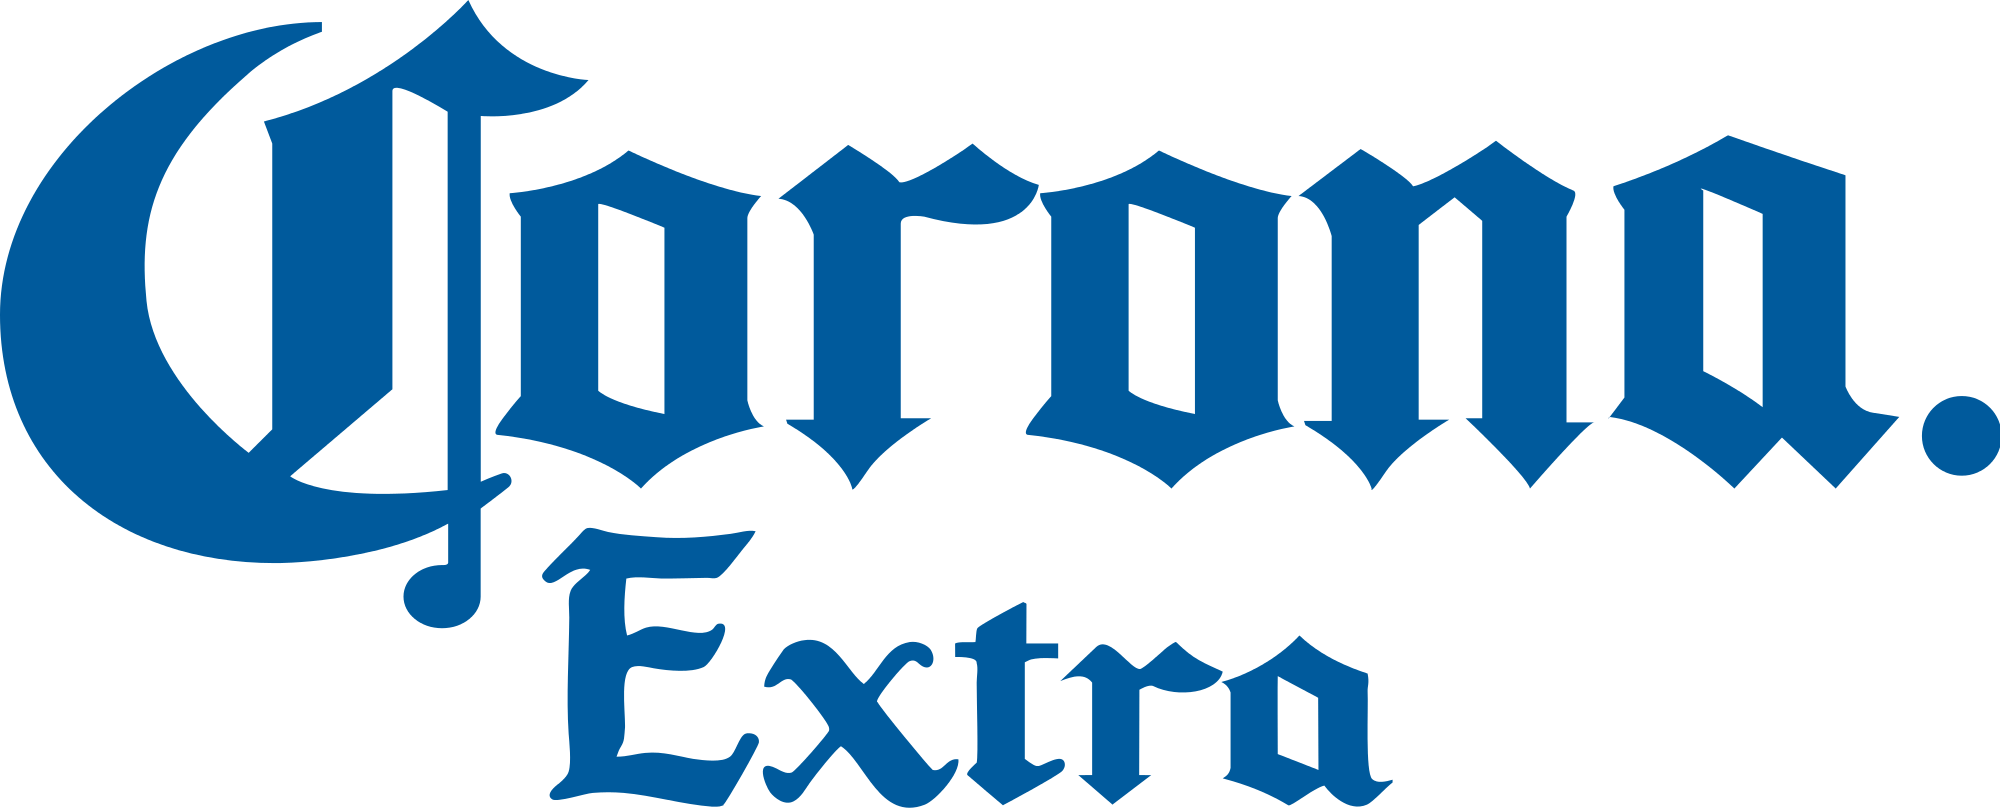 Corona Extra Logo - File:Corona Extra text logo.svg - Wikimedia Commons